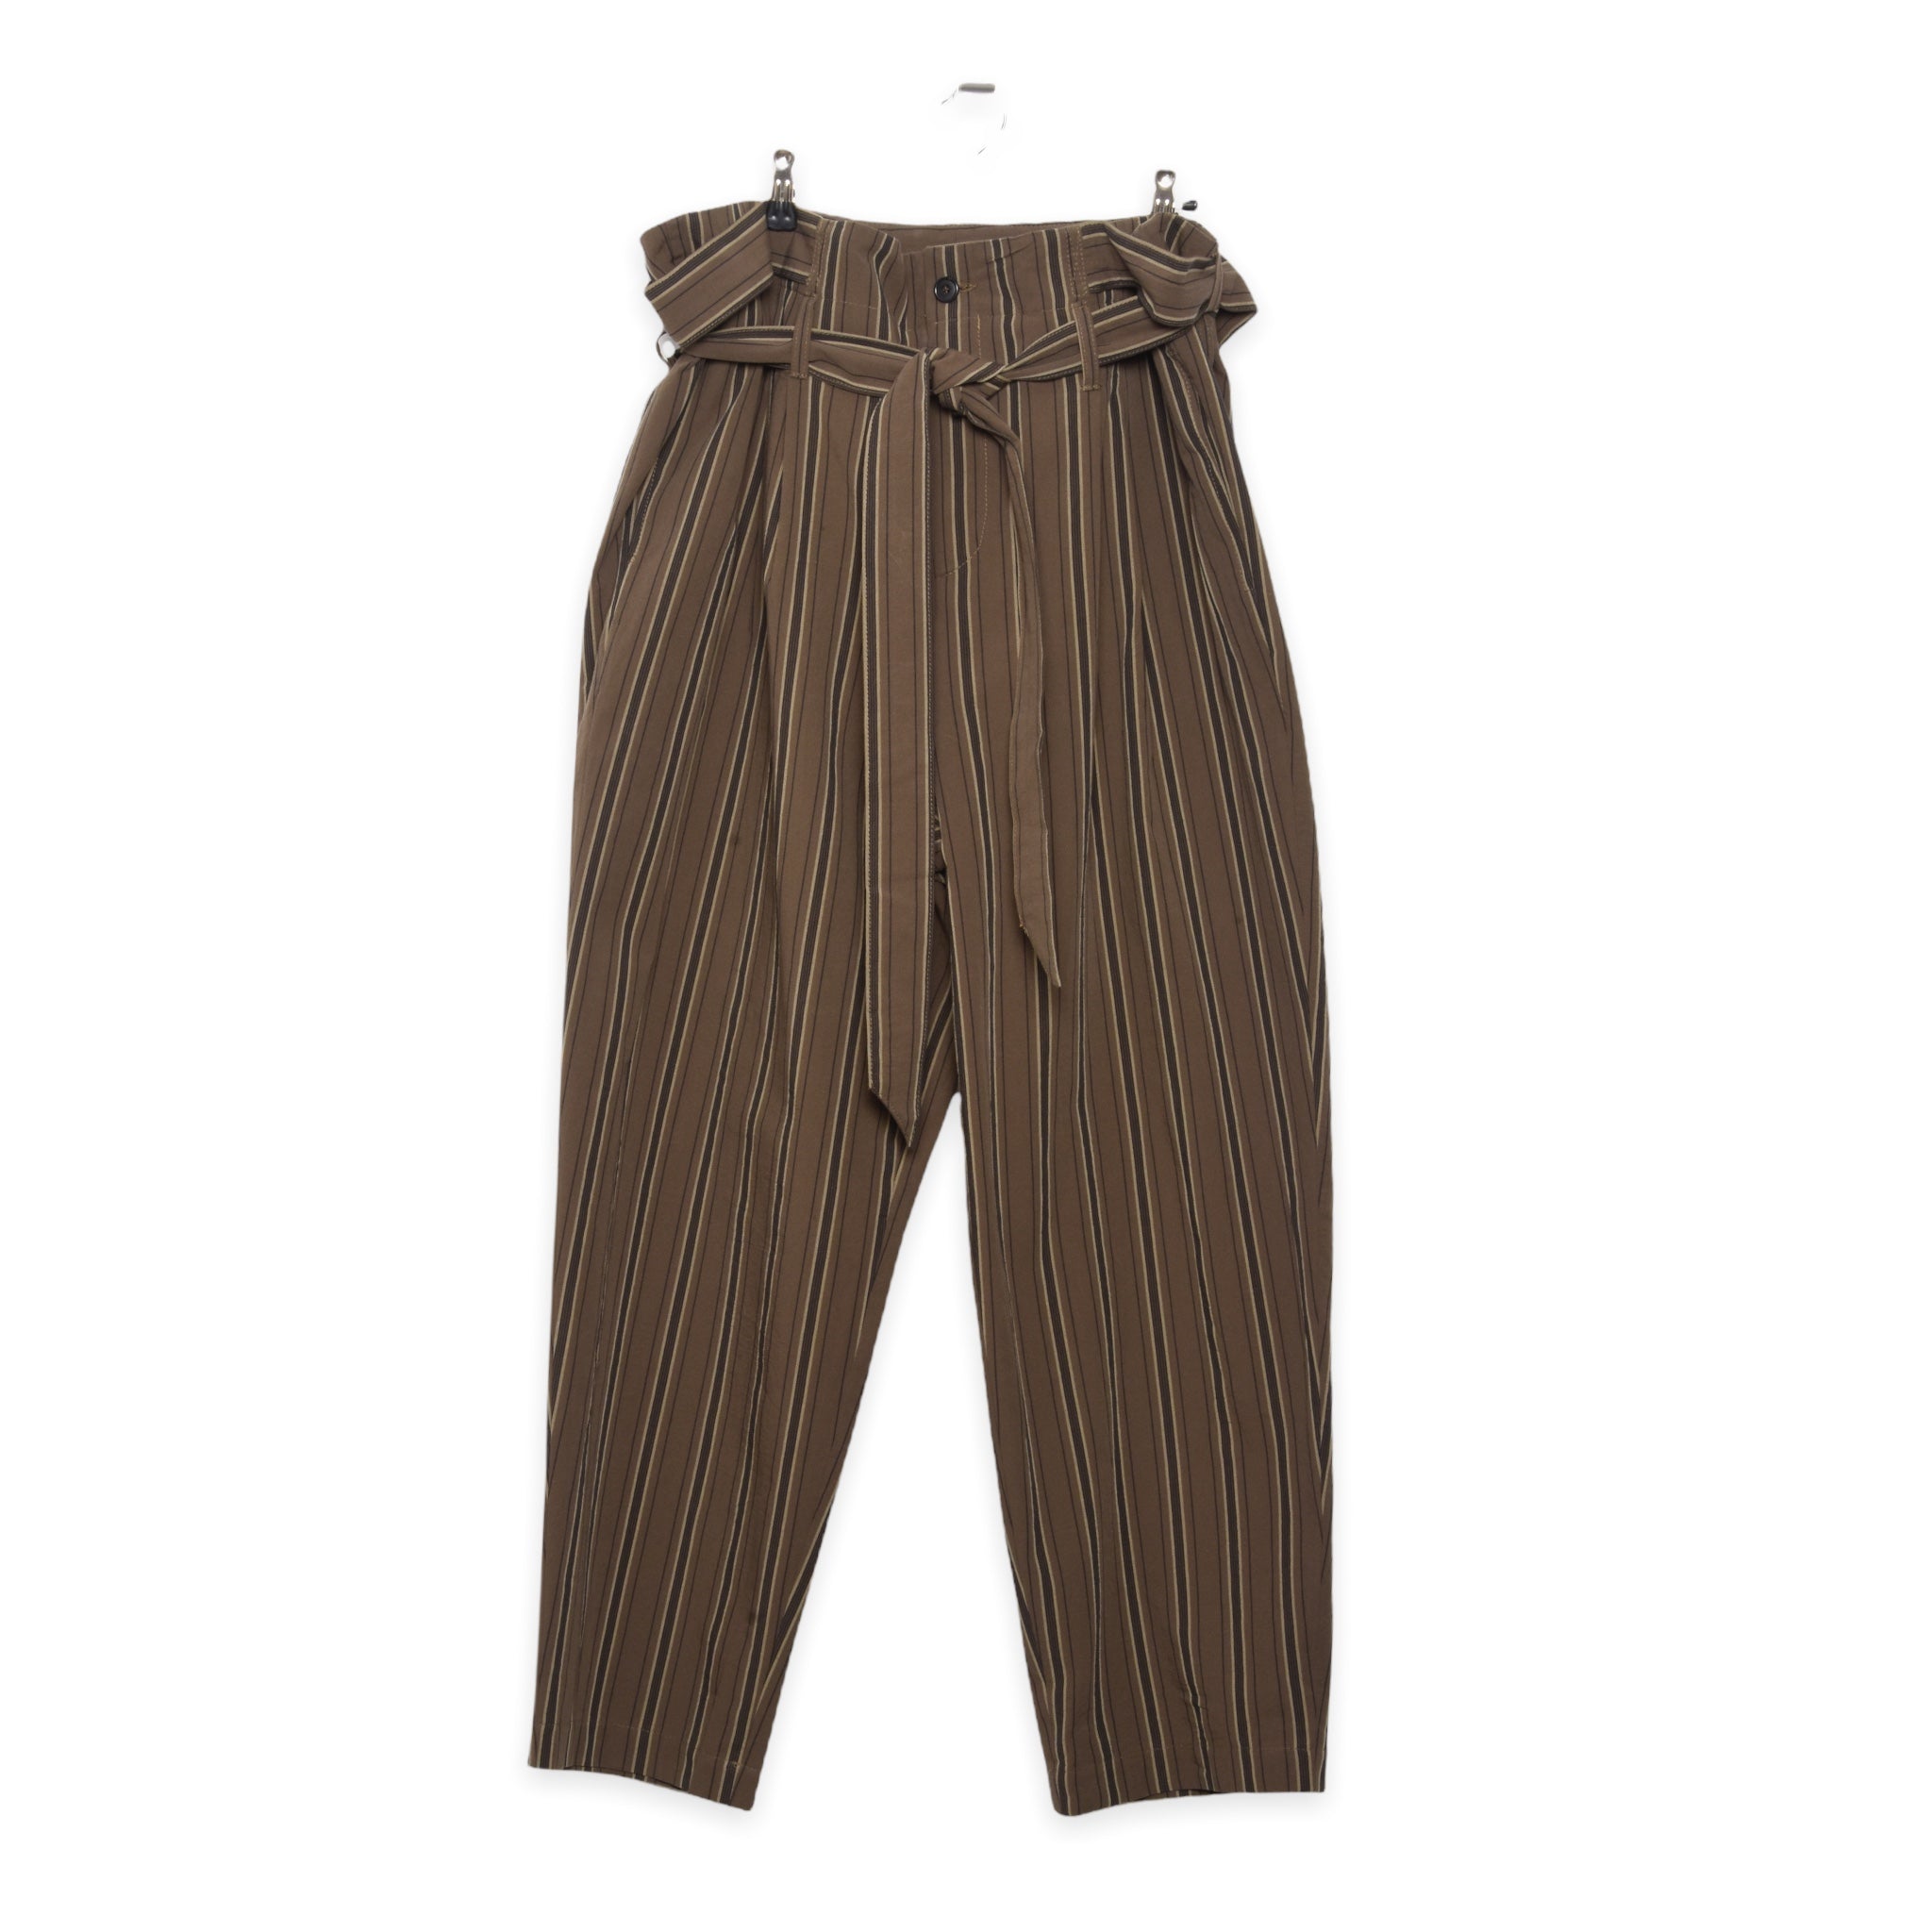 Frank Leder Cotton Wide Trouser brown stripes